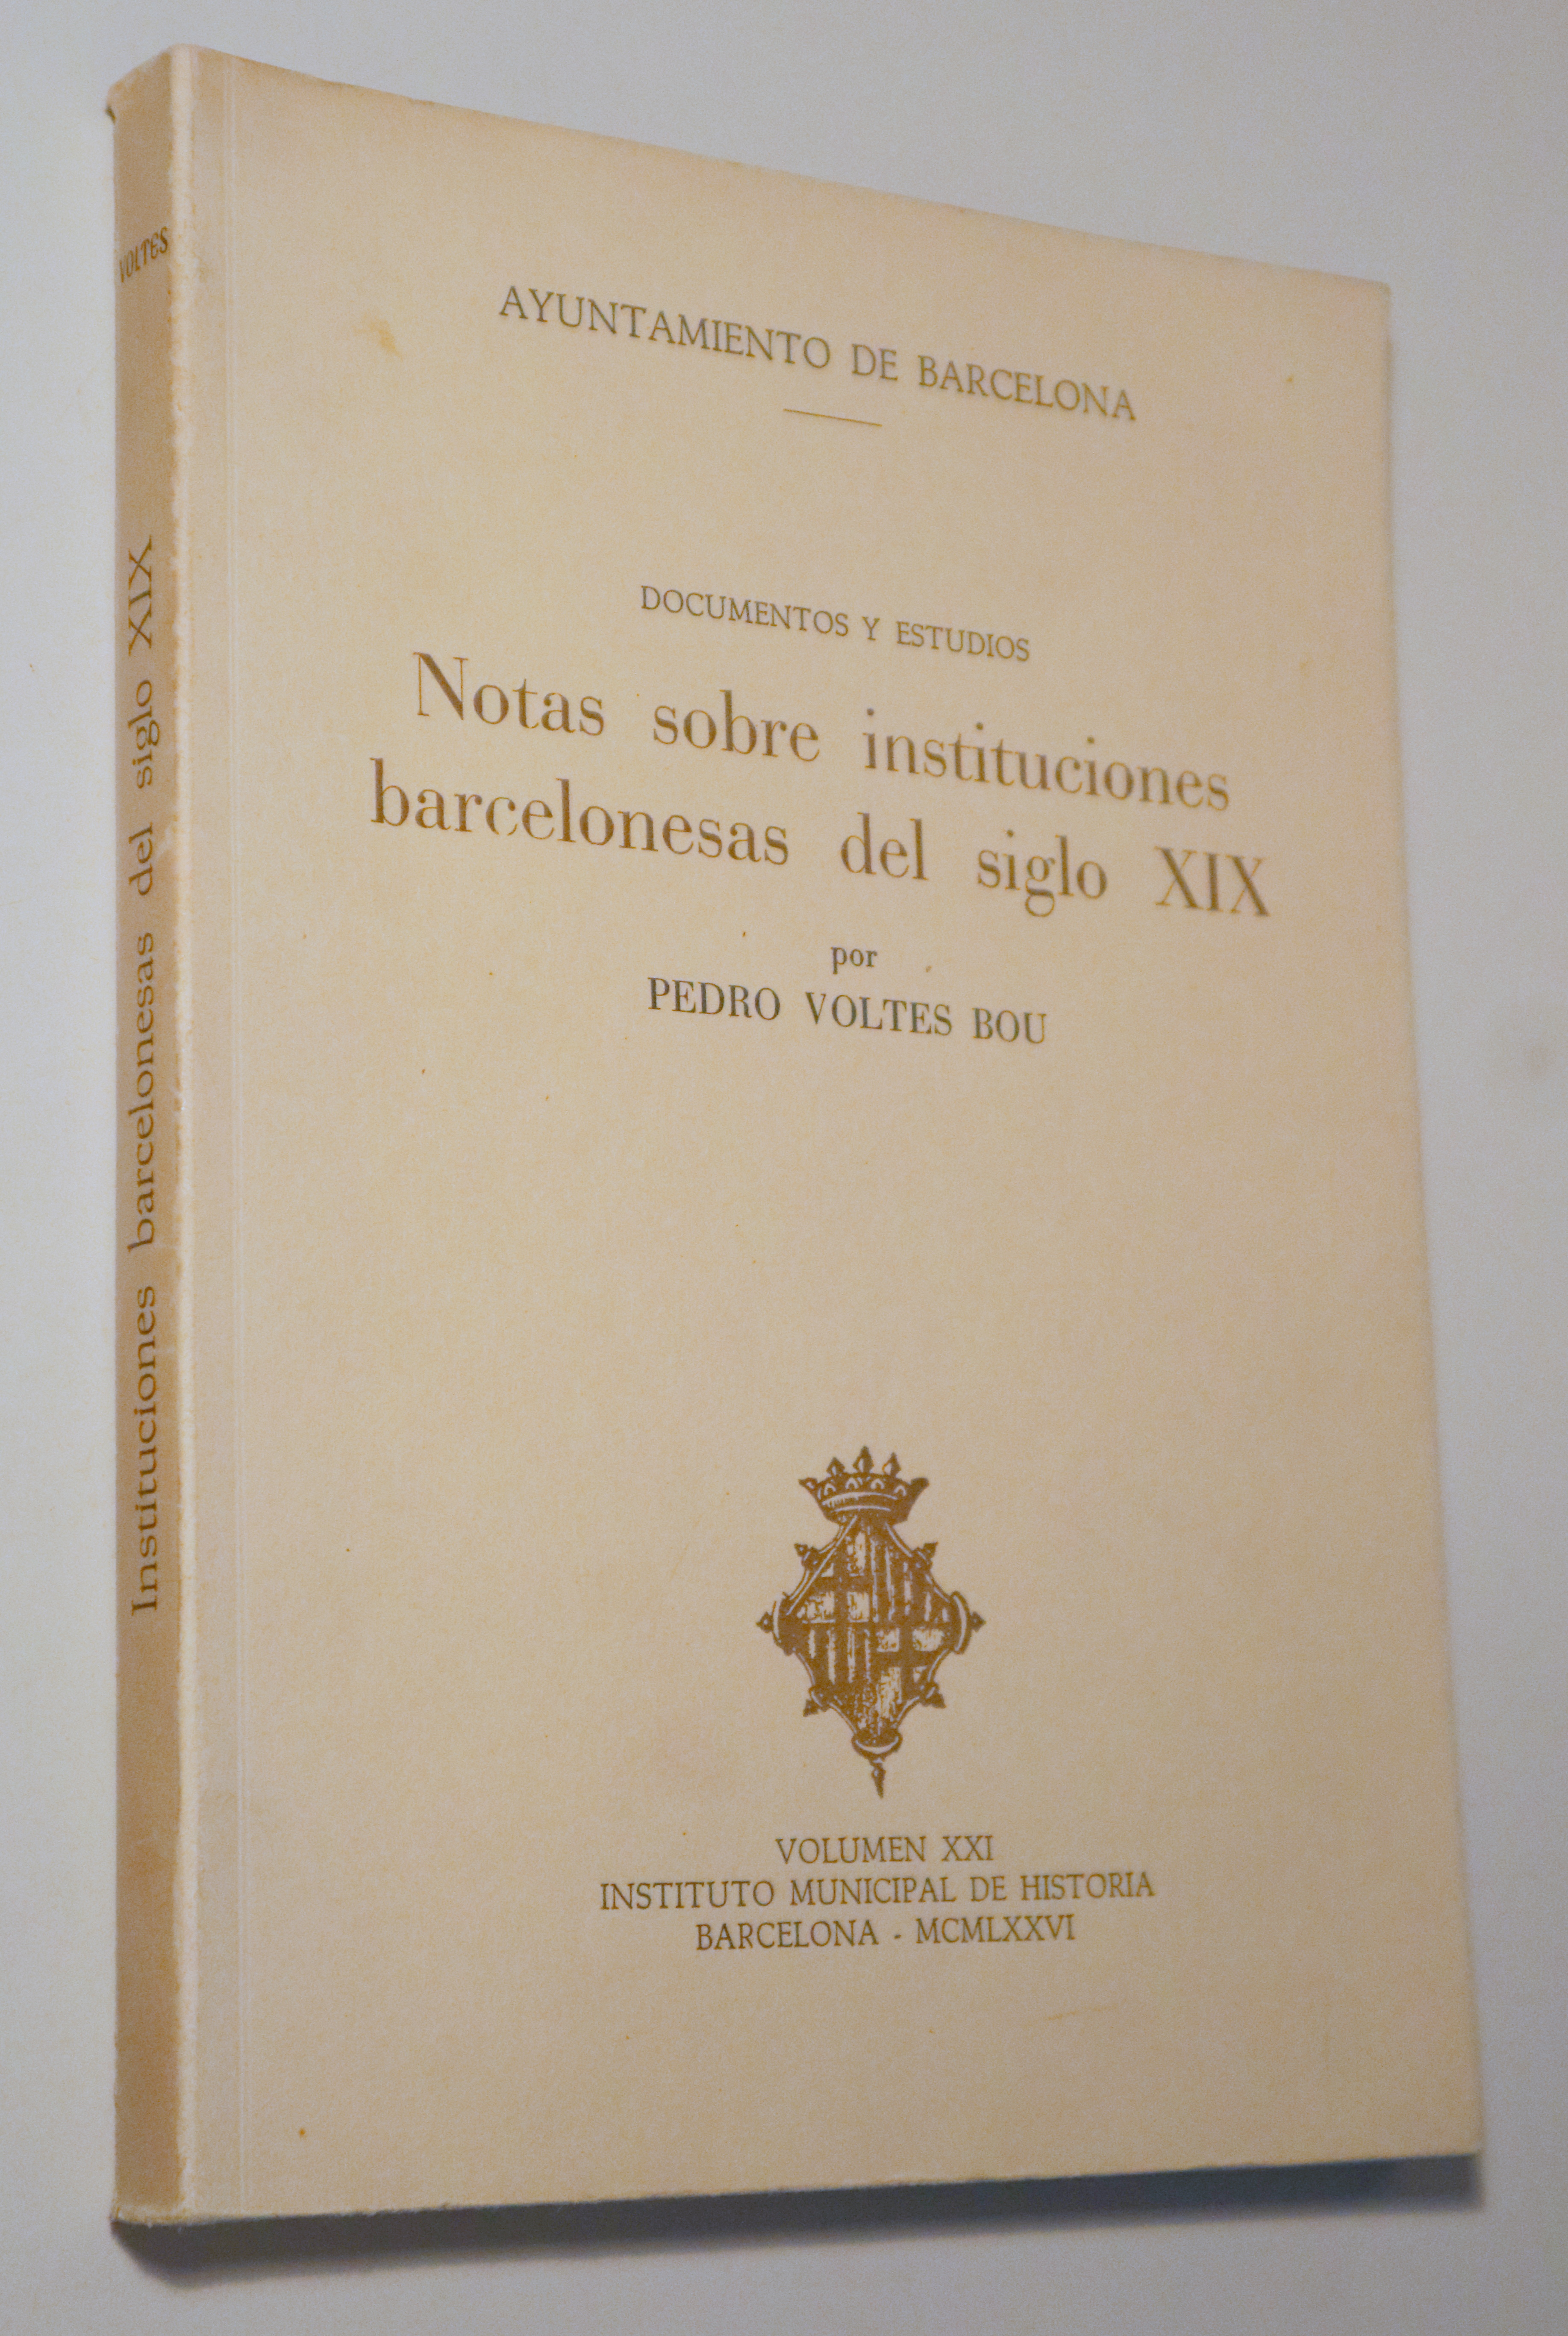 NOTAS SOBRE INSTITUCIONES BARCELONESAS DEL SIGLO XIX - Barcelona 1976 - Muy ilustrado